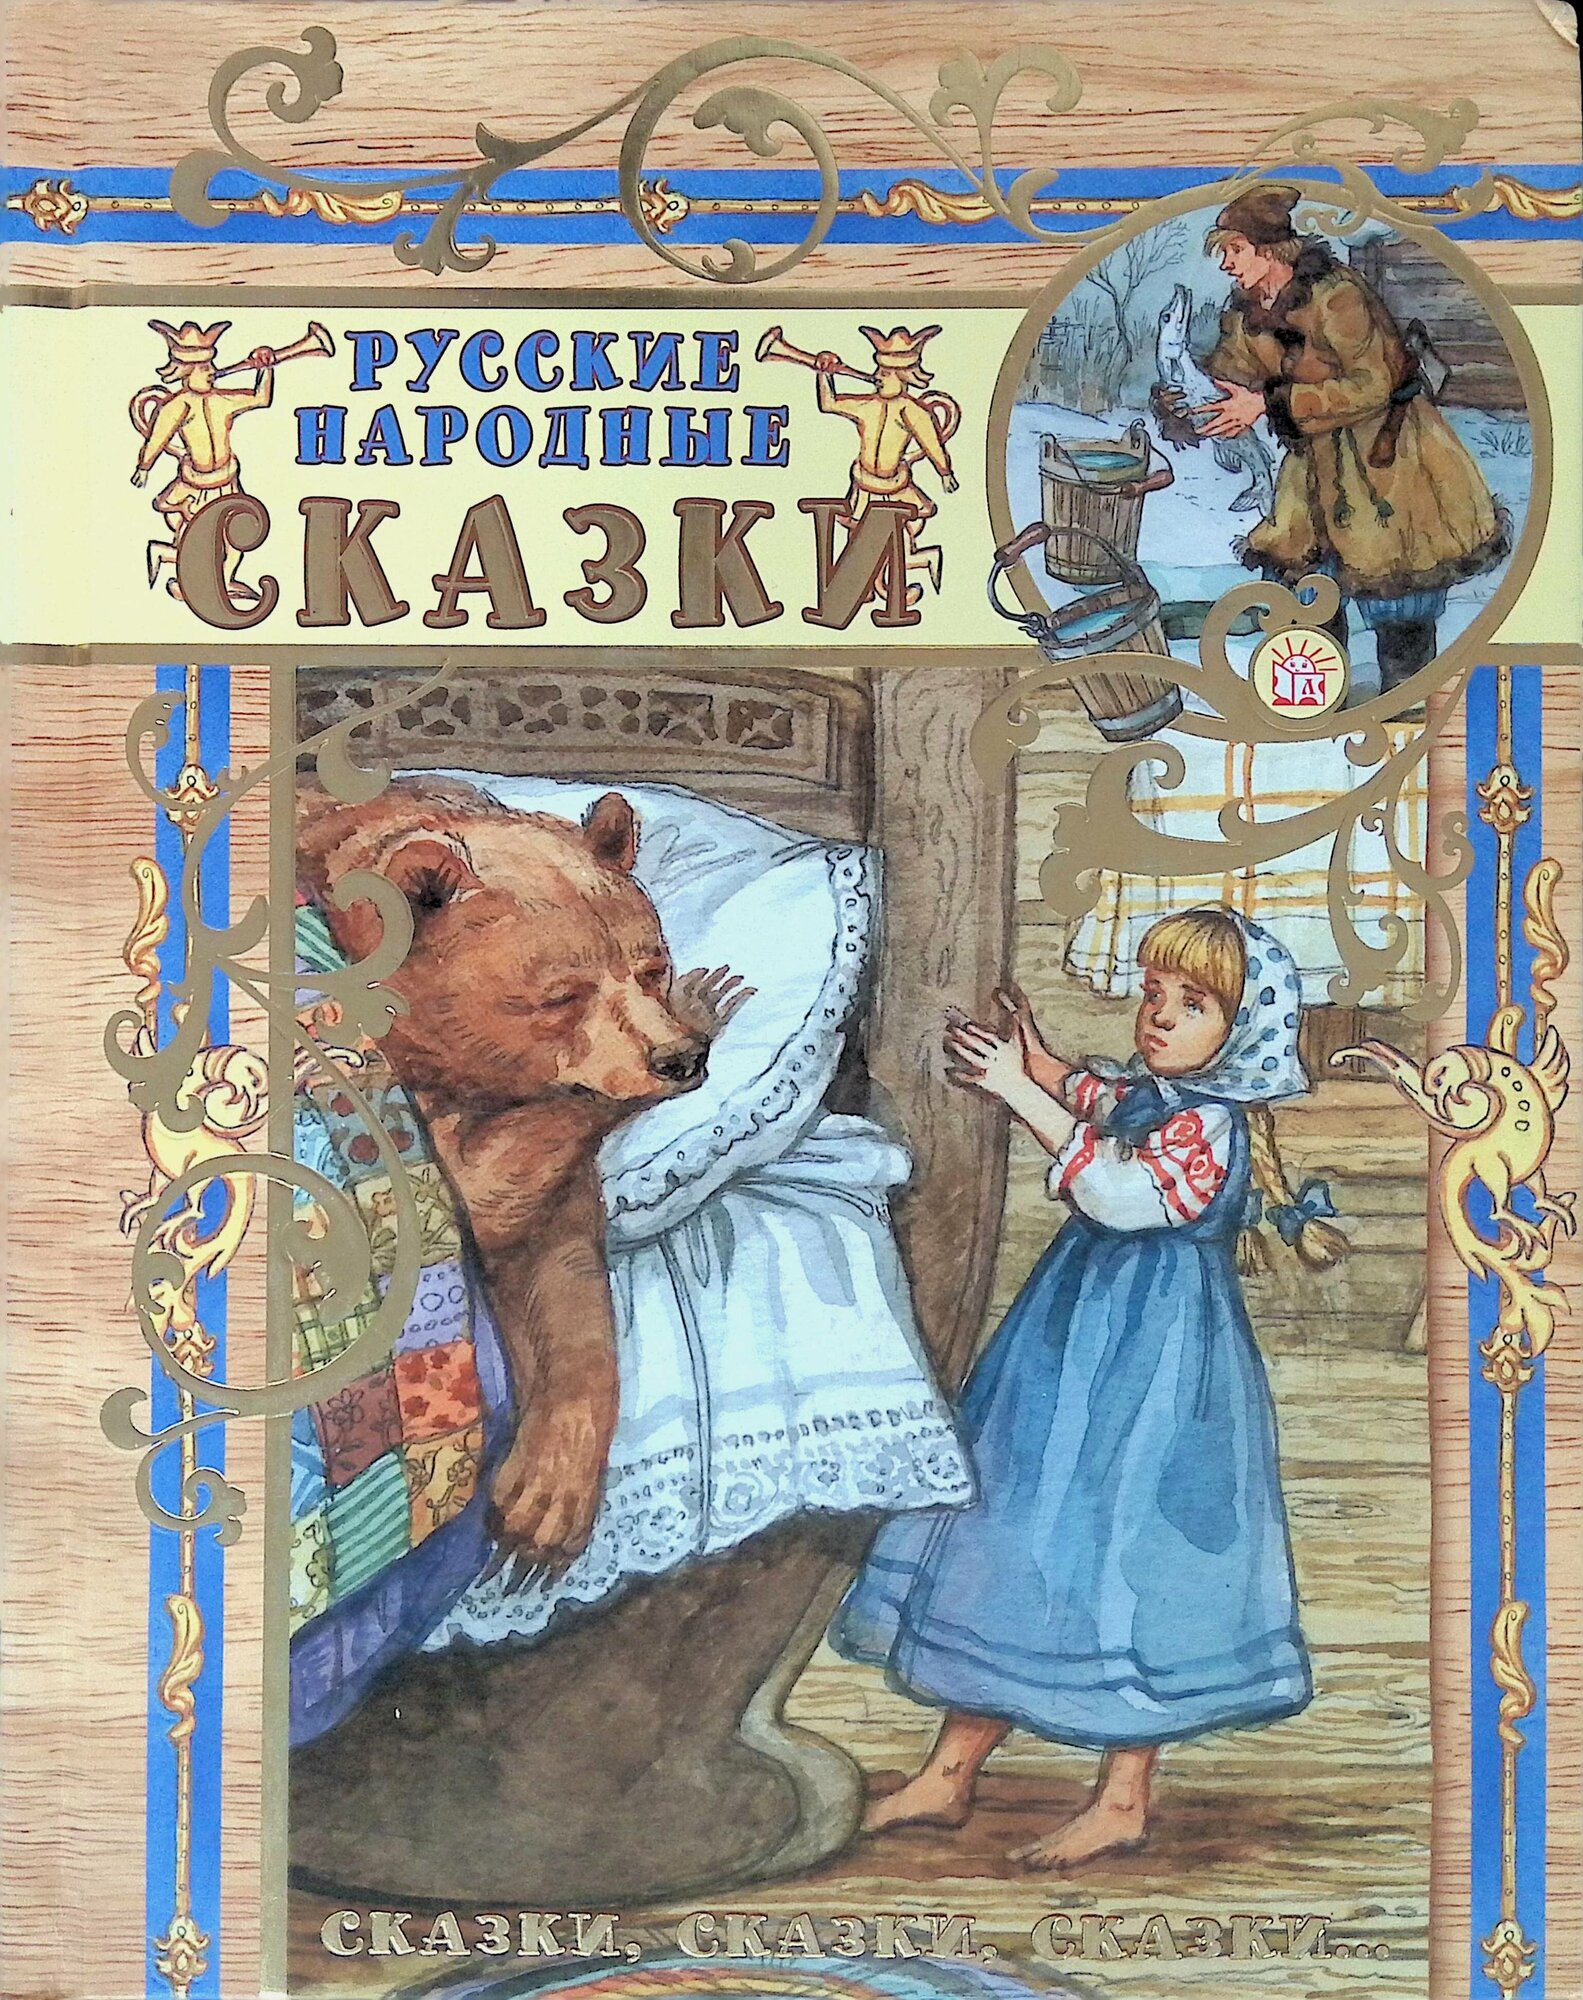 Сказки, сказки, сказки... Русские народные сказки - фото №1